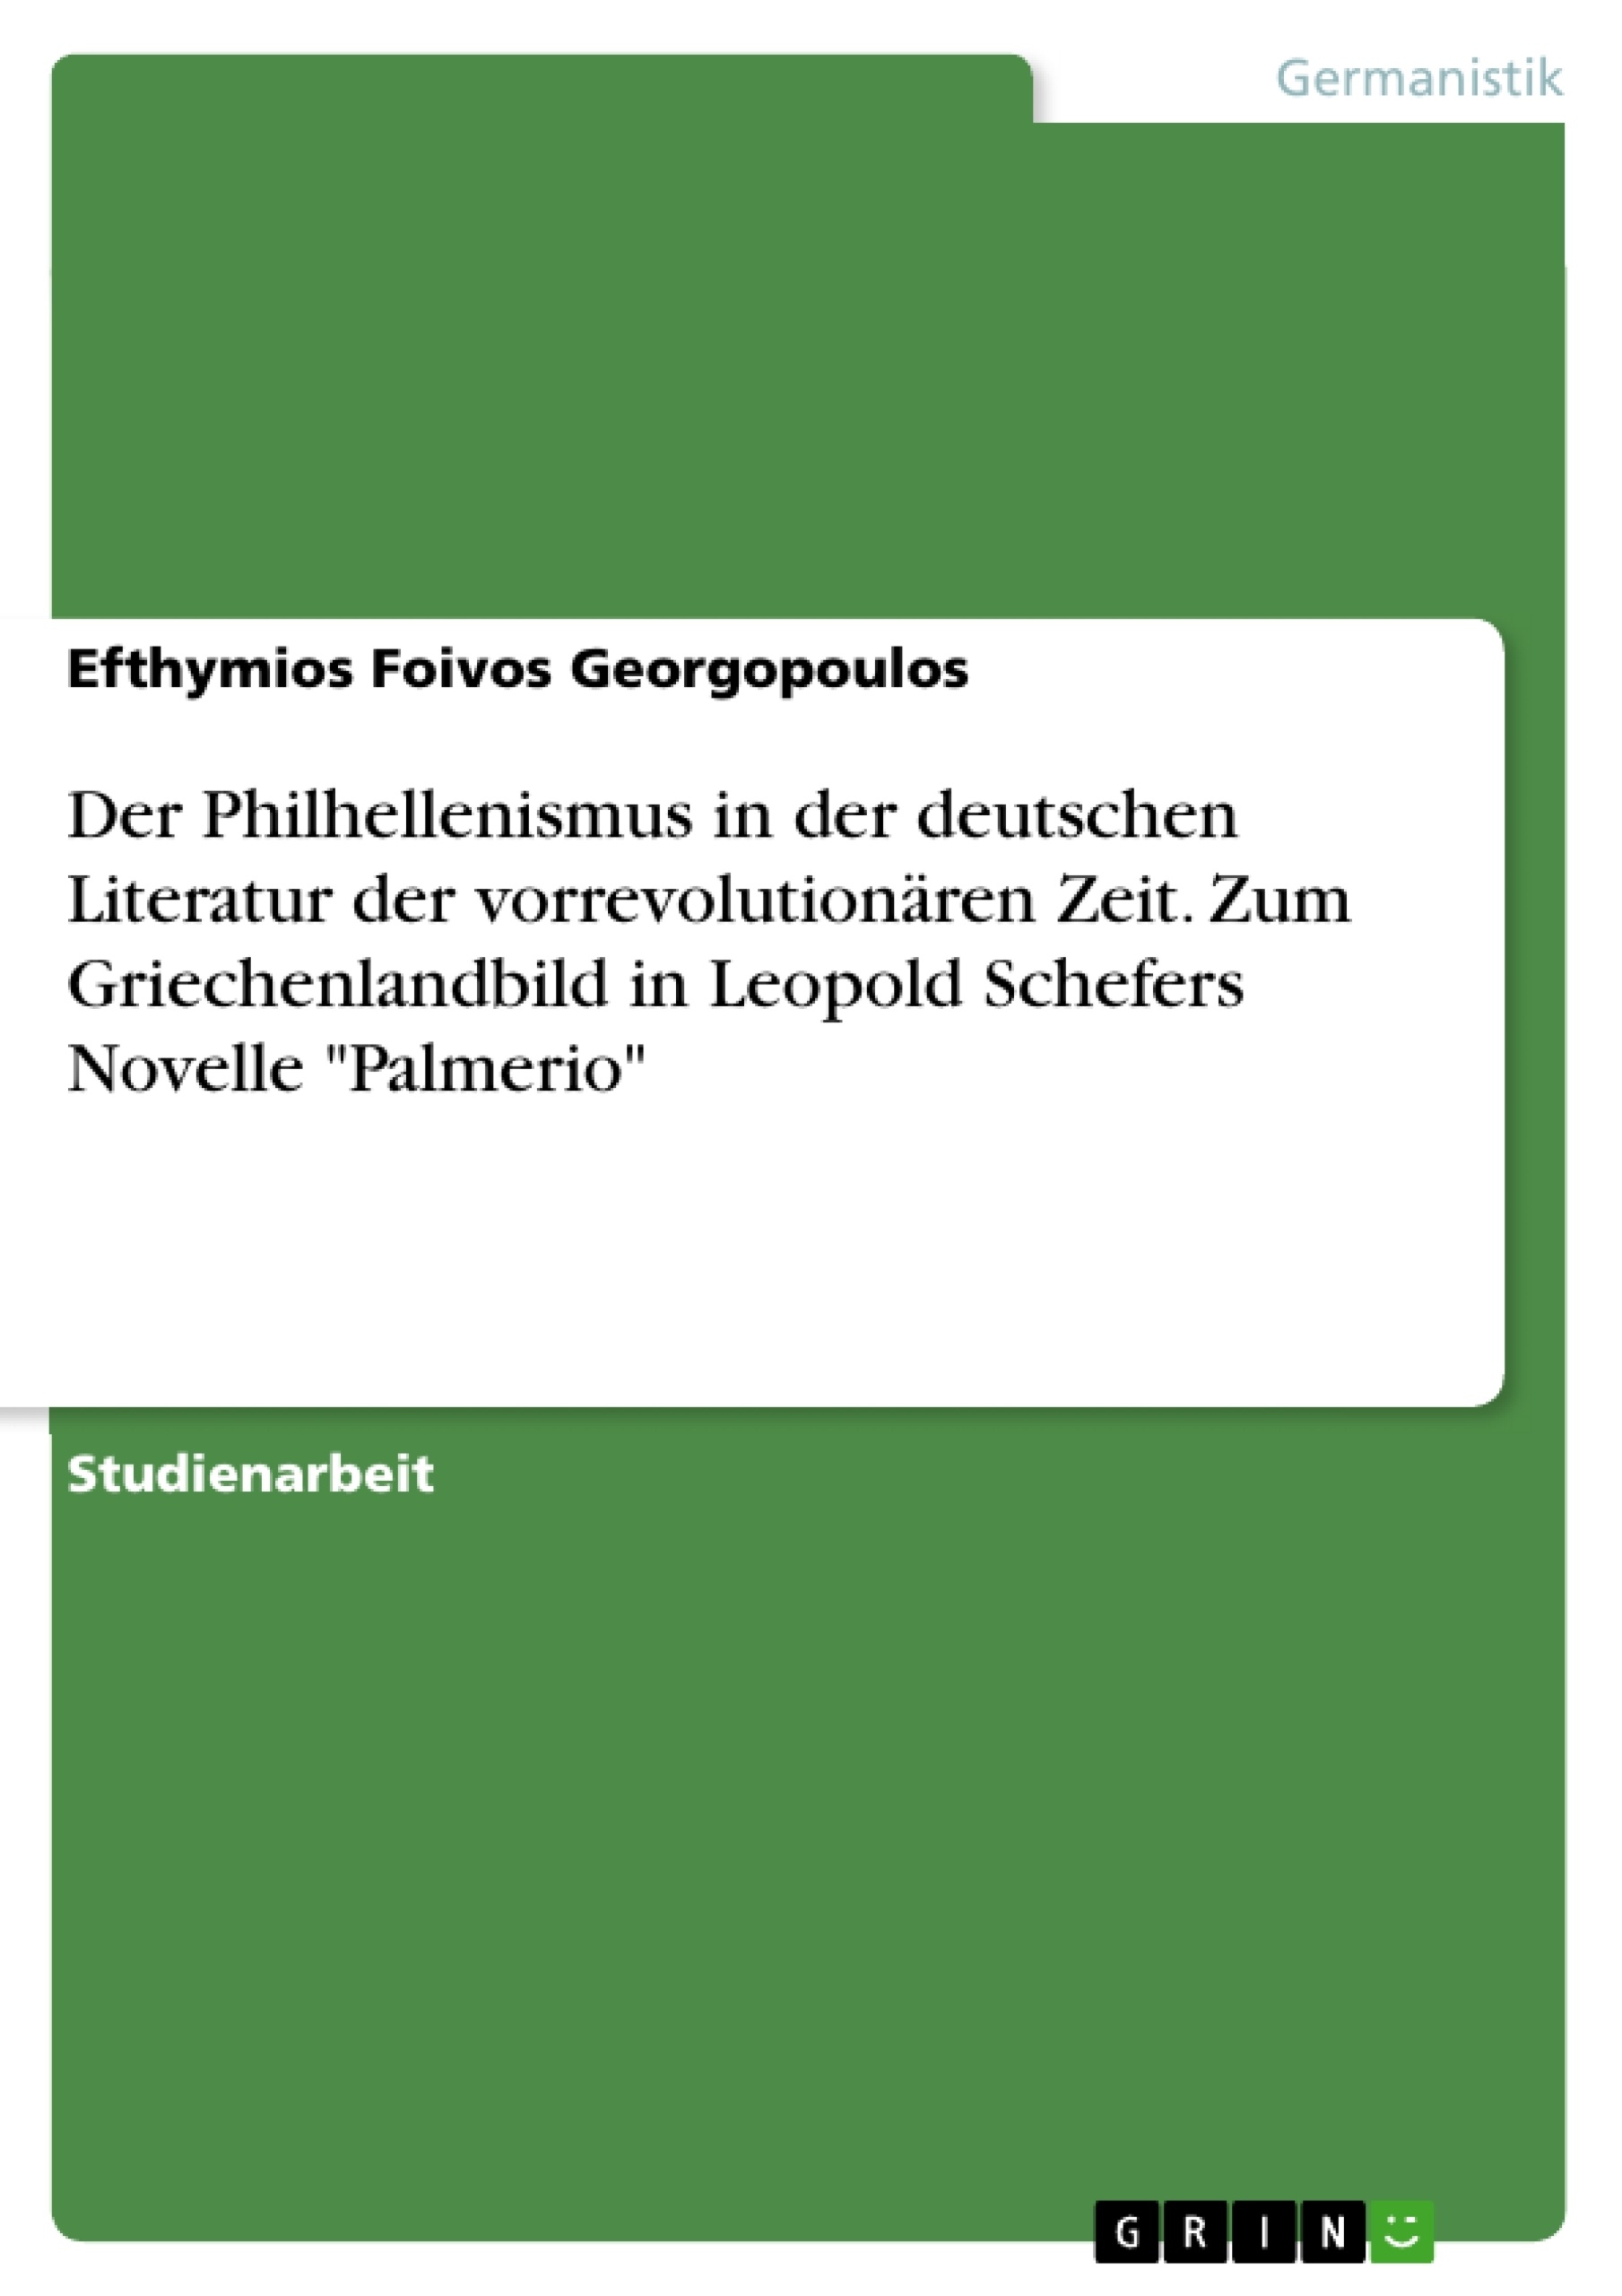 Title: Der Philhellenismus in der deutschen Literatur der vorrevolutionären Zeit. Zum Griechenlandbild in Leopold Schefers Novelle "Palmerio"